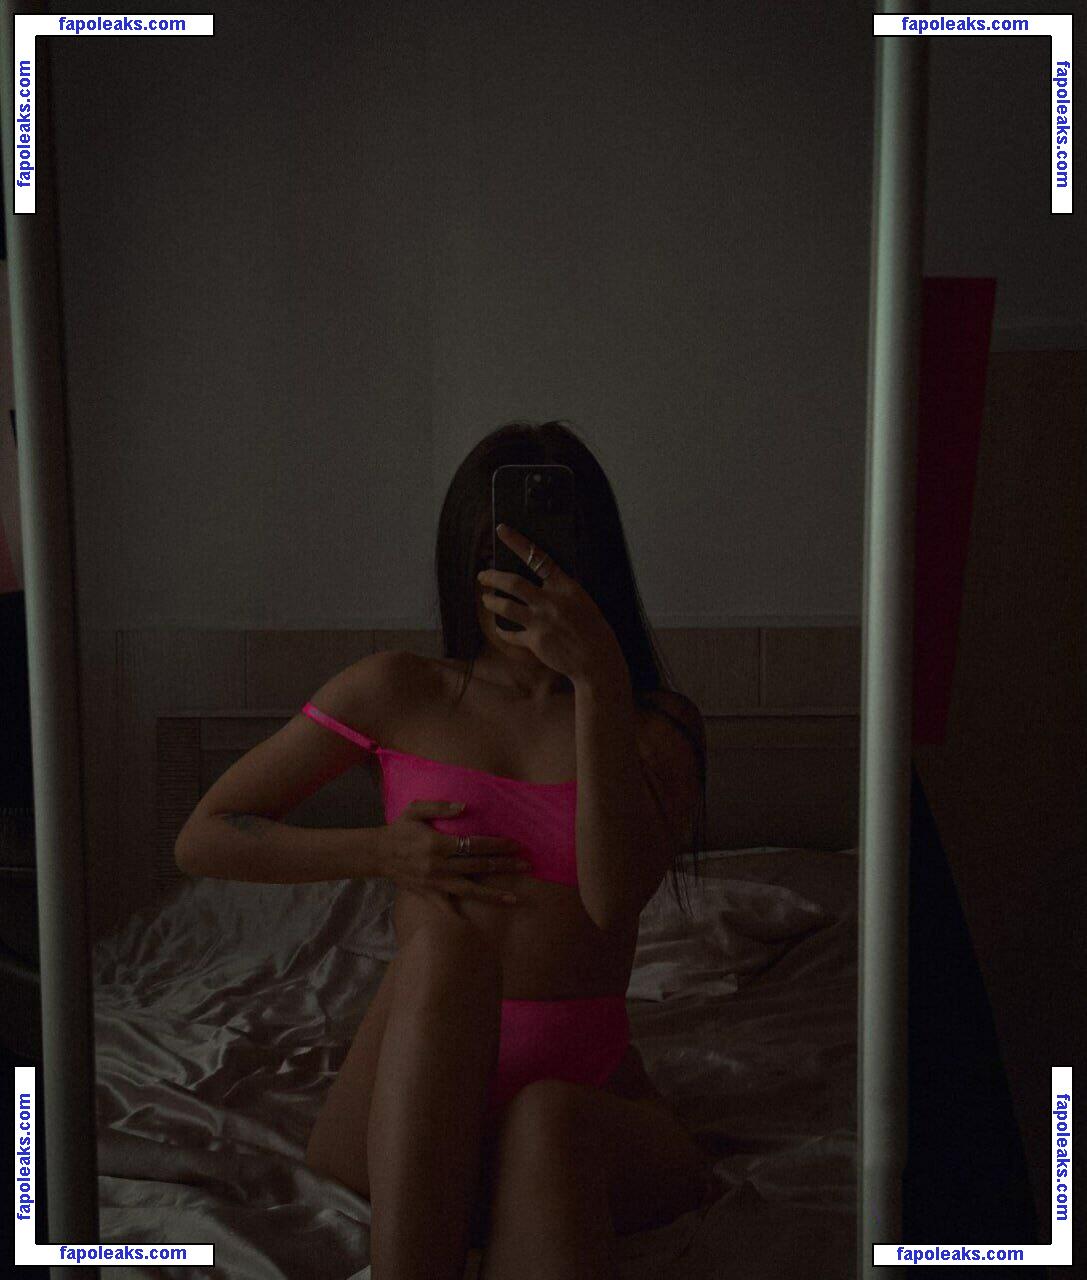 Anastasia Steklova / astklv nude photo #0254 from OnlyFans